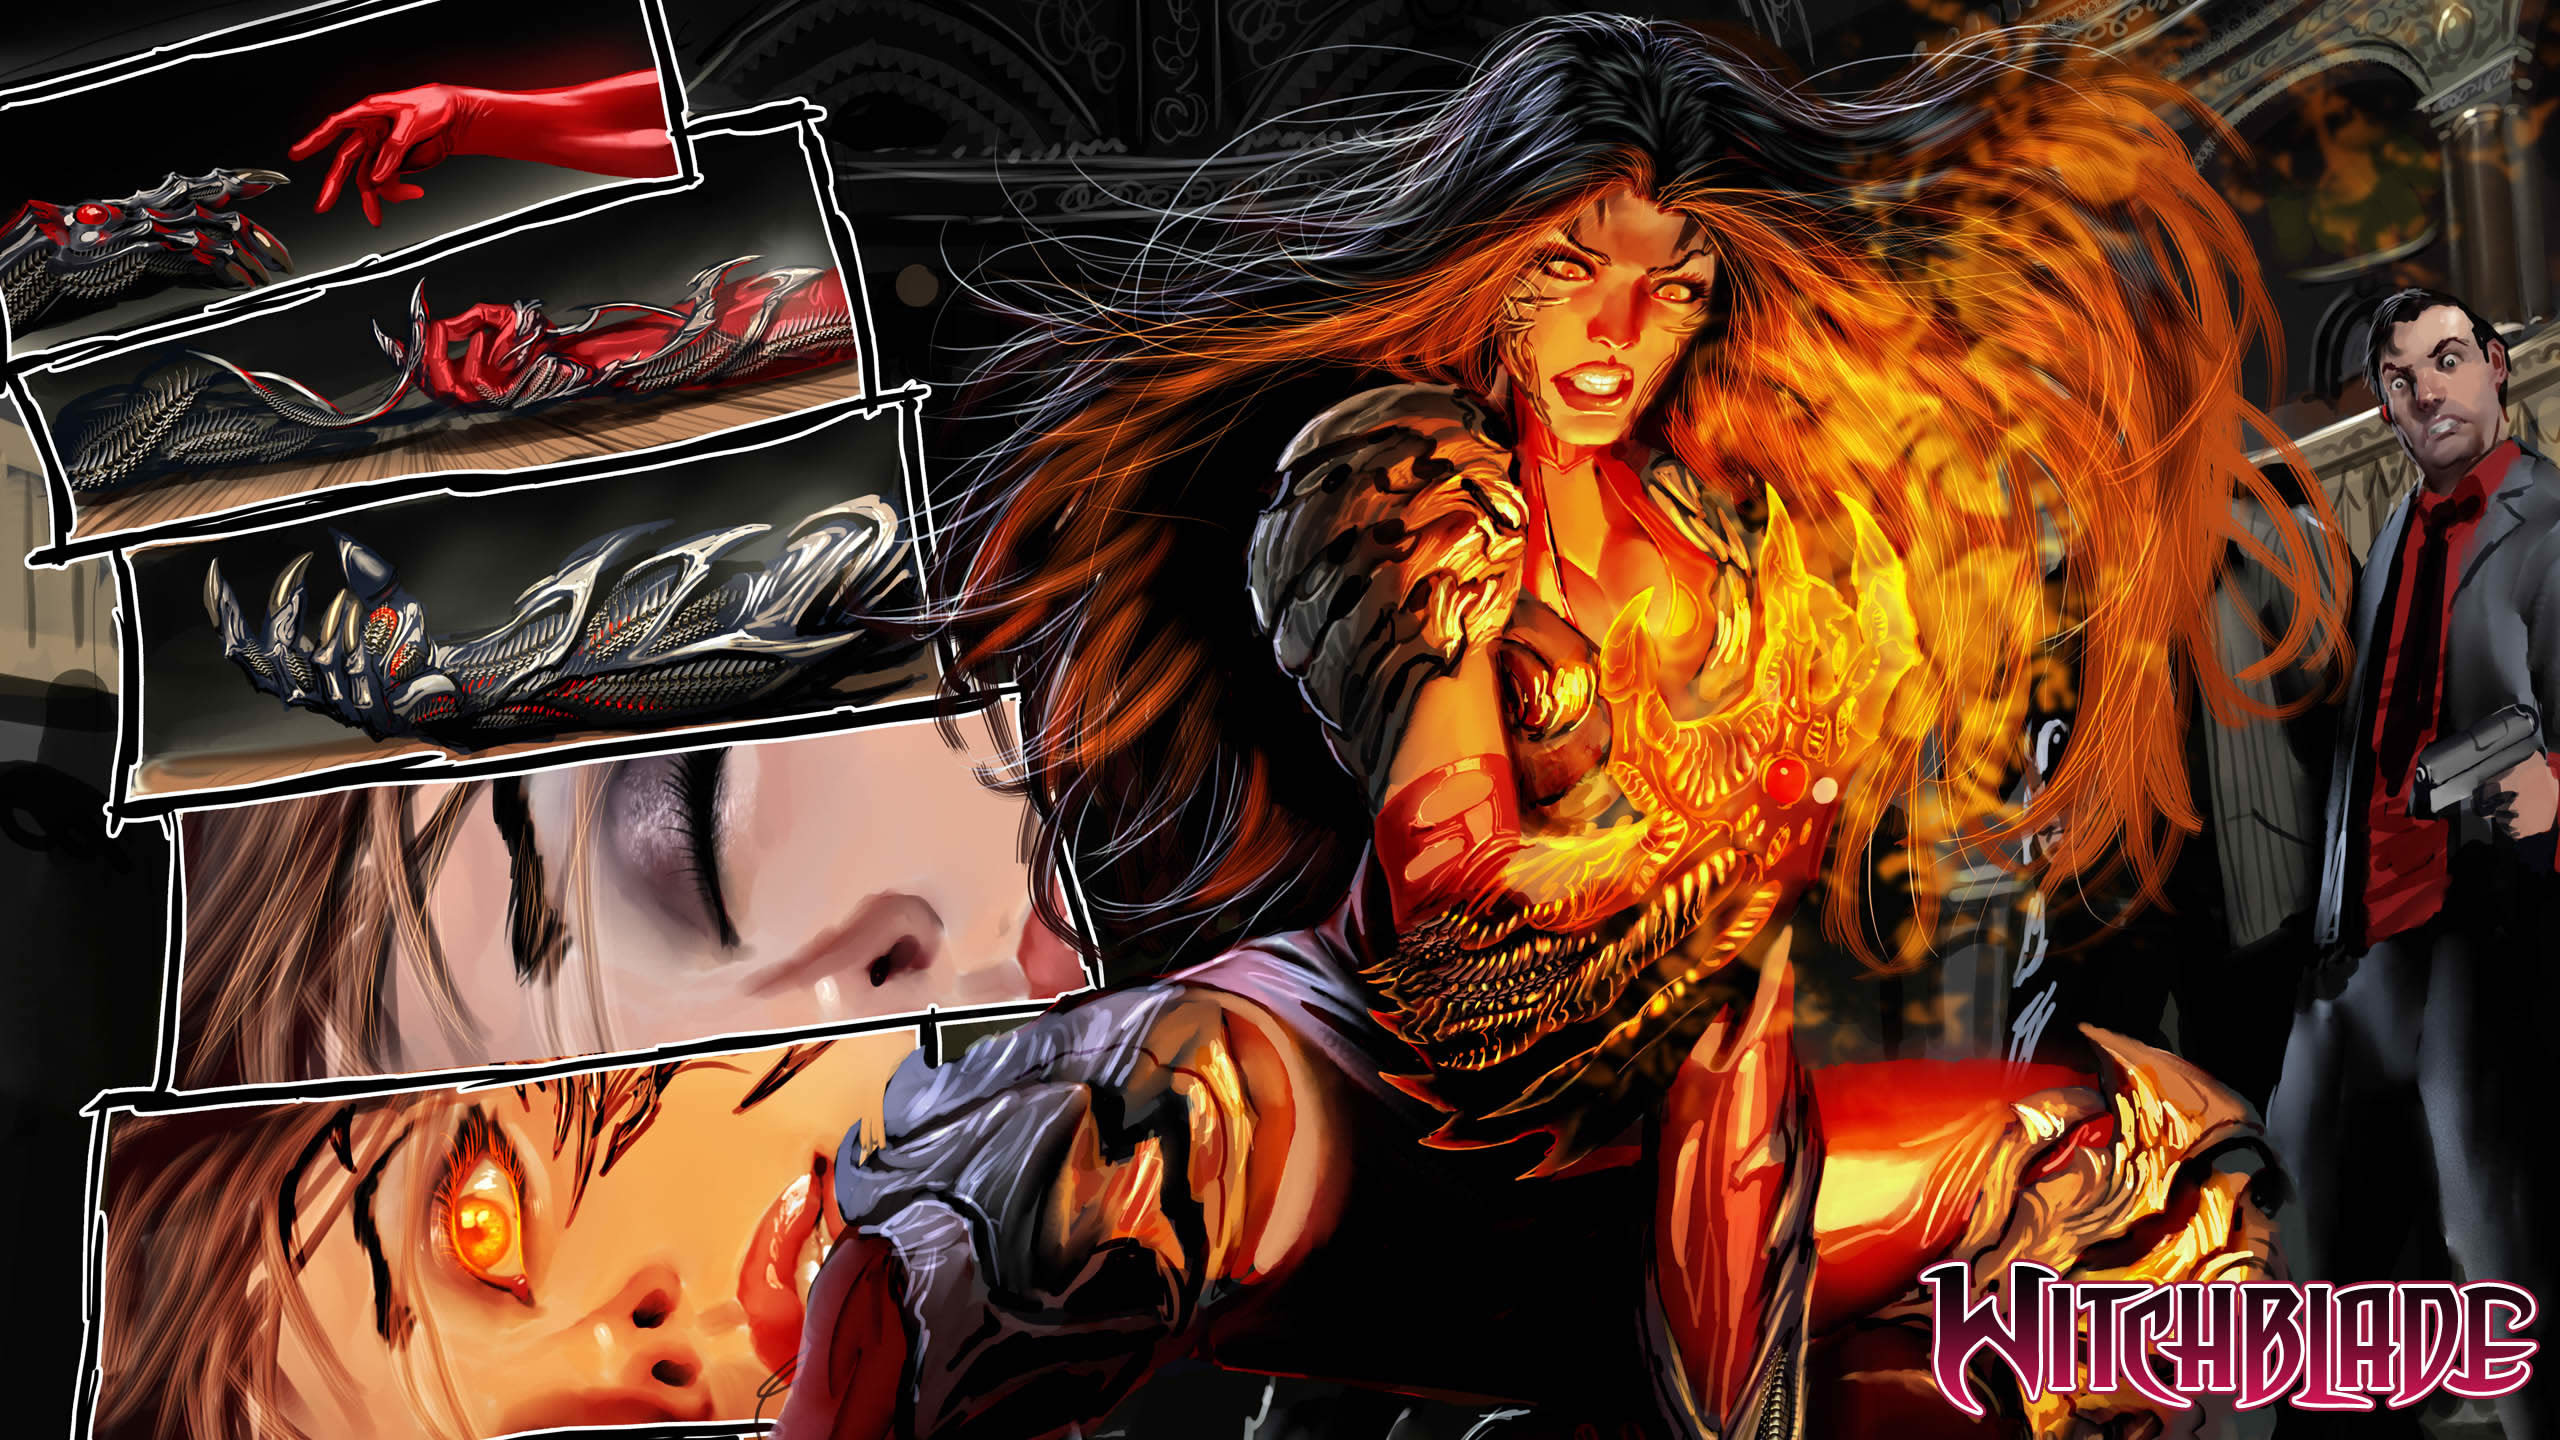 2560x1440 Comics Witchblade fantasy superhero magic fire warriors women sexy babes  wallpaper |  | 31428 | WallpaperUP